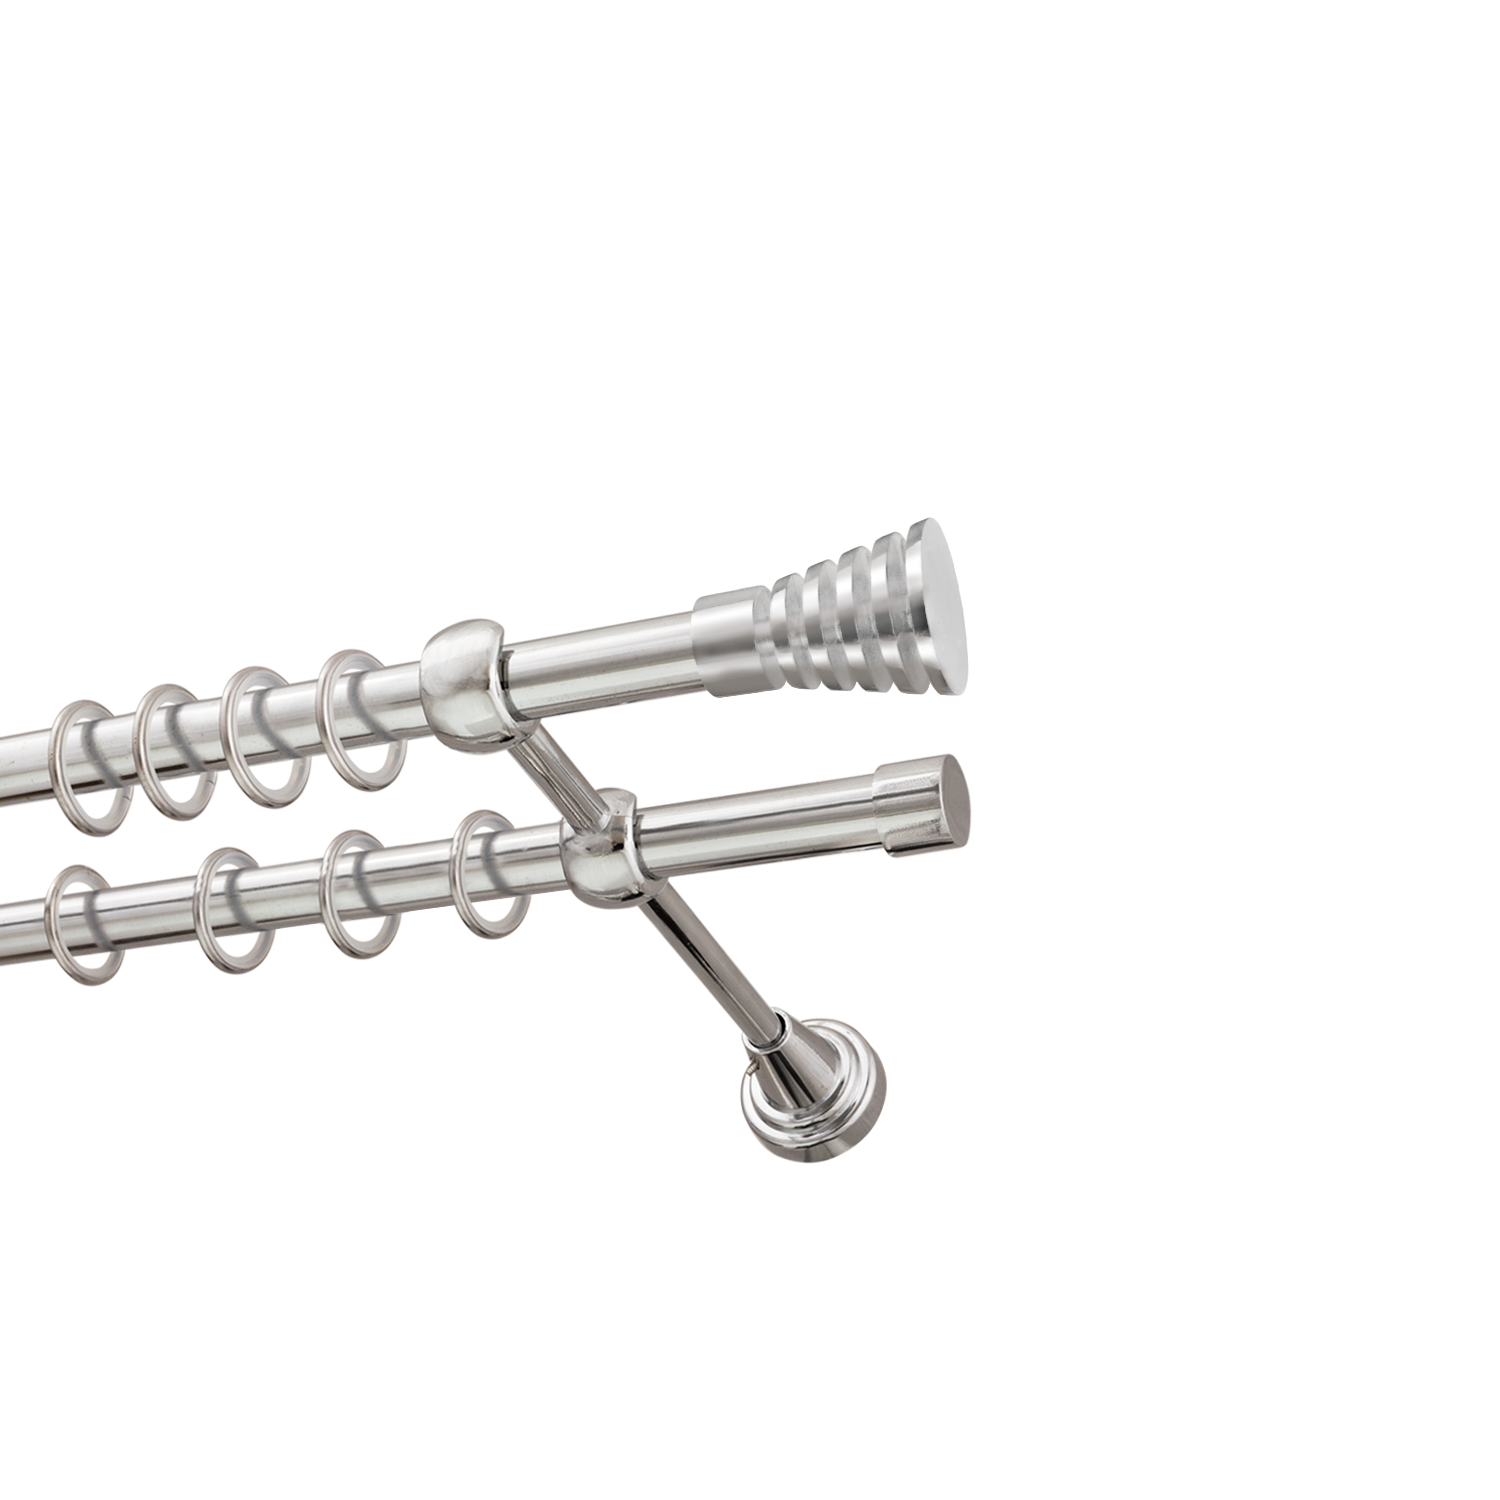 Металлический карниз для штор Верона, двухрядный 16/16 мм, серебро, гладкая штанга, длина 200 см